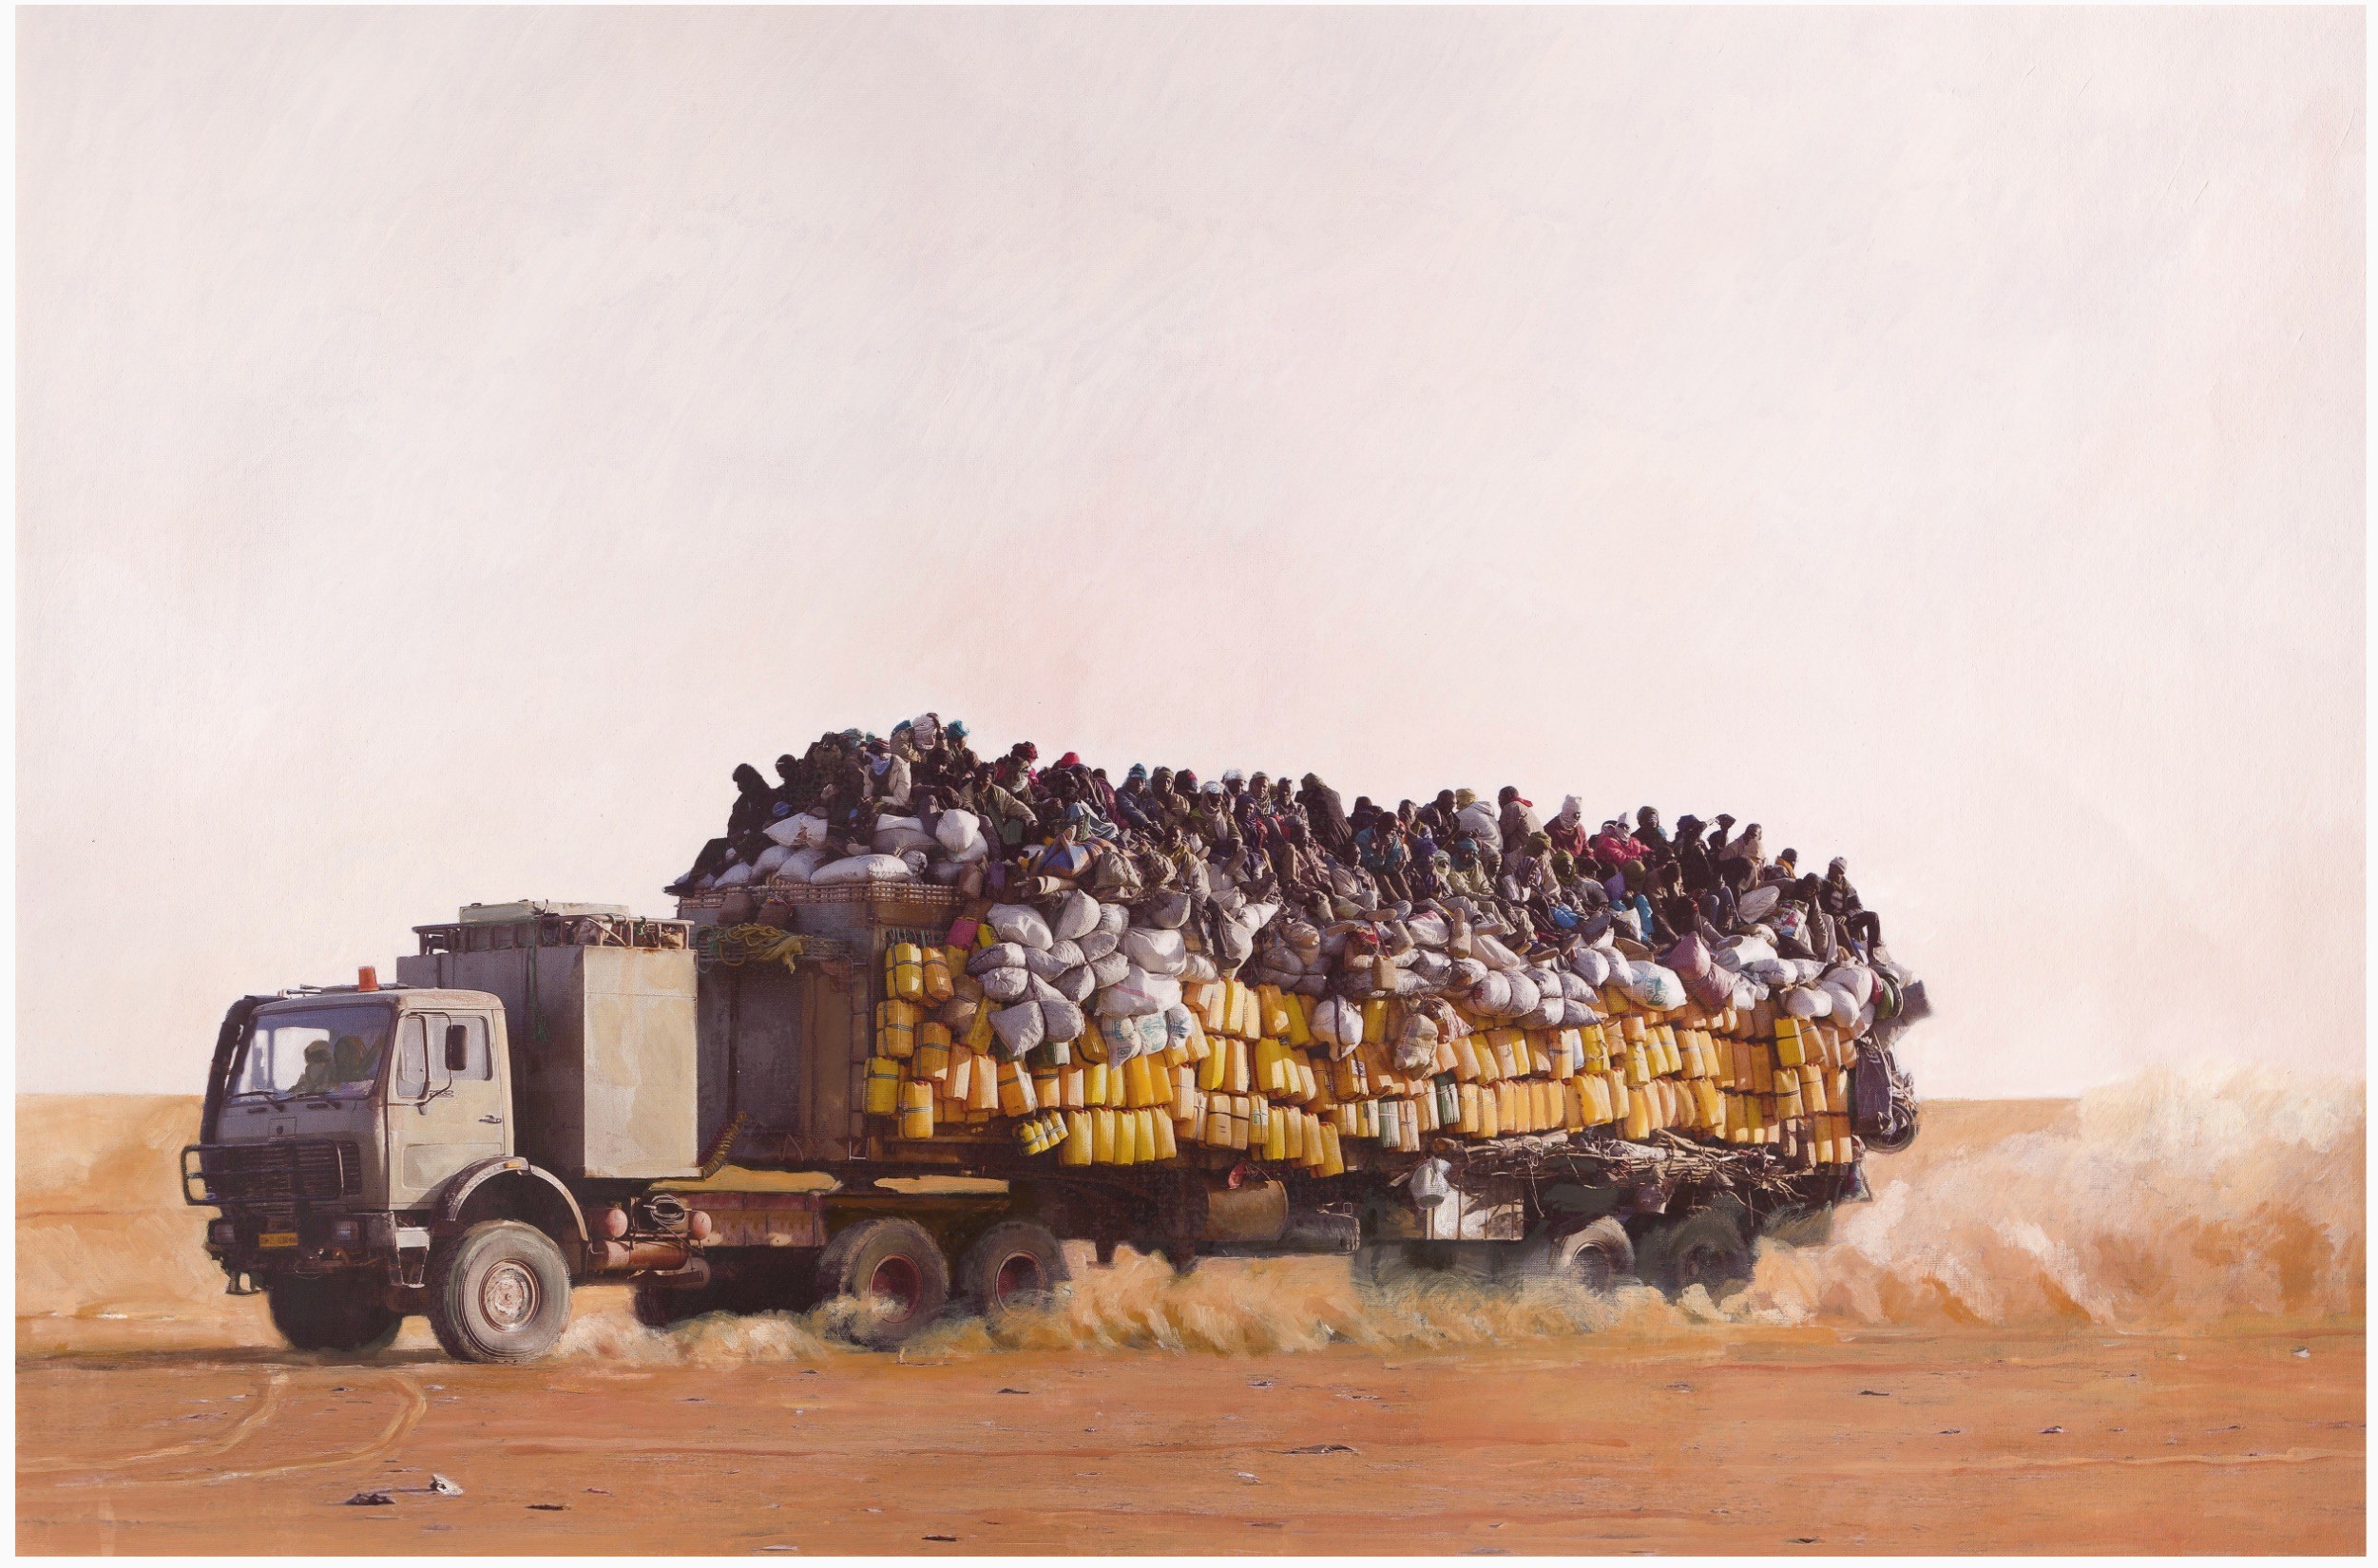 Les chercheurs d'or, Agadez, Niger Huile et photographie sur toile 62 x 95 cm © Titouan Lamazou, 2014